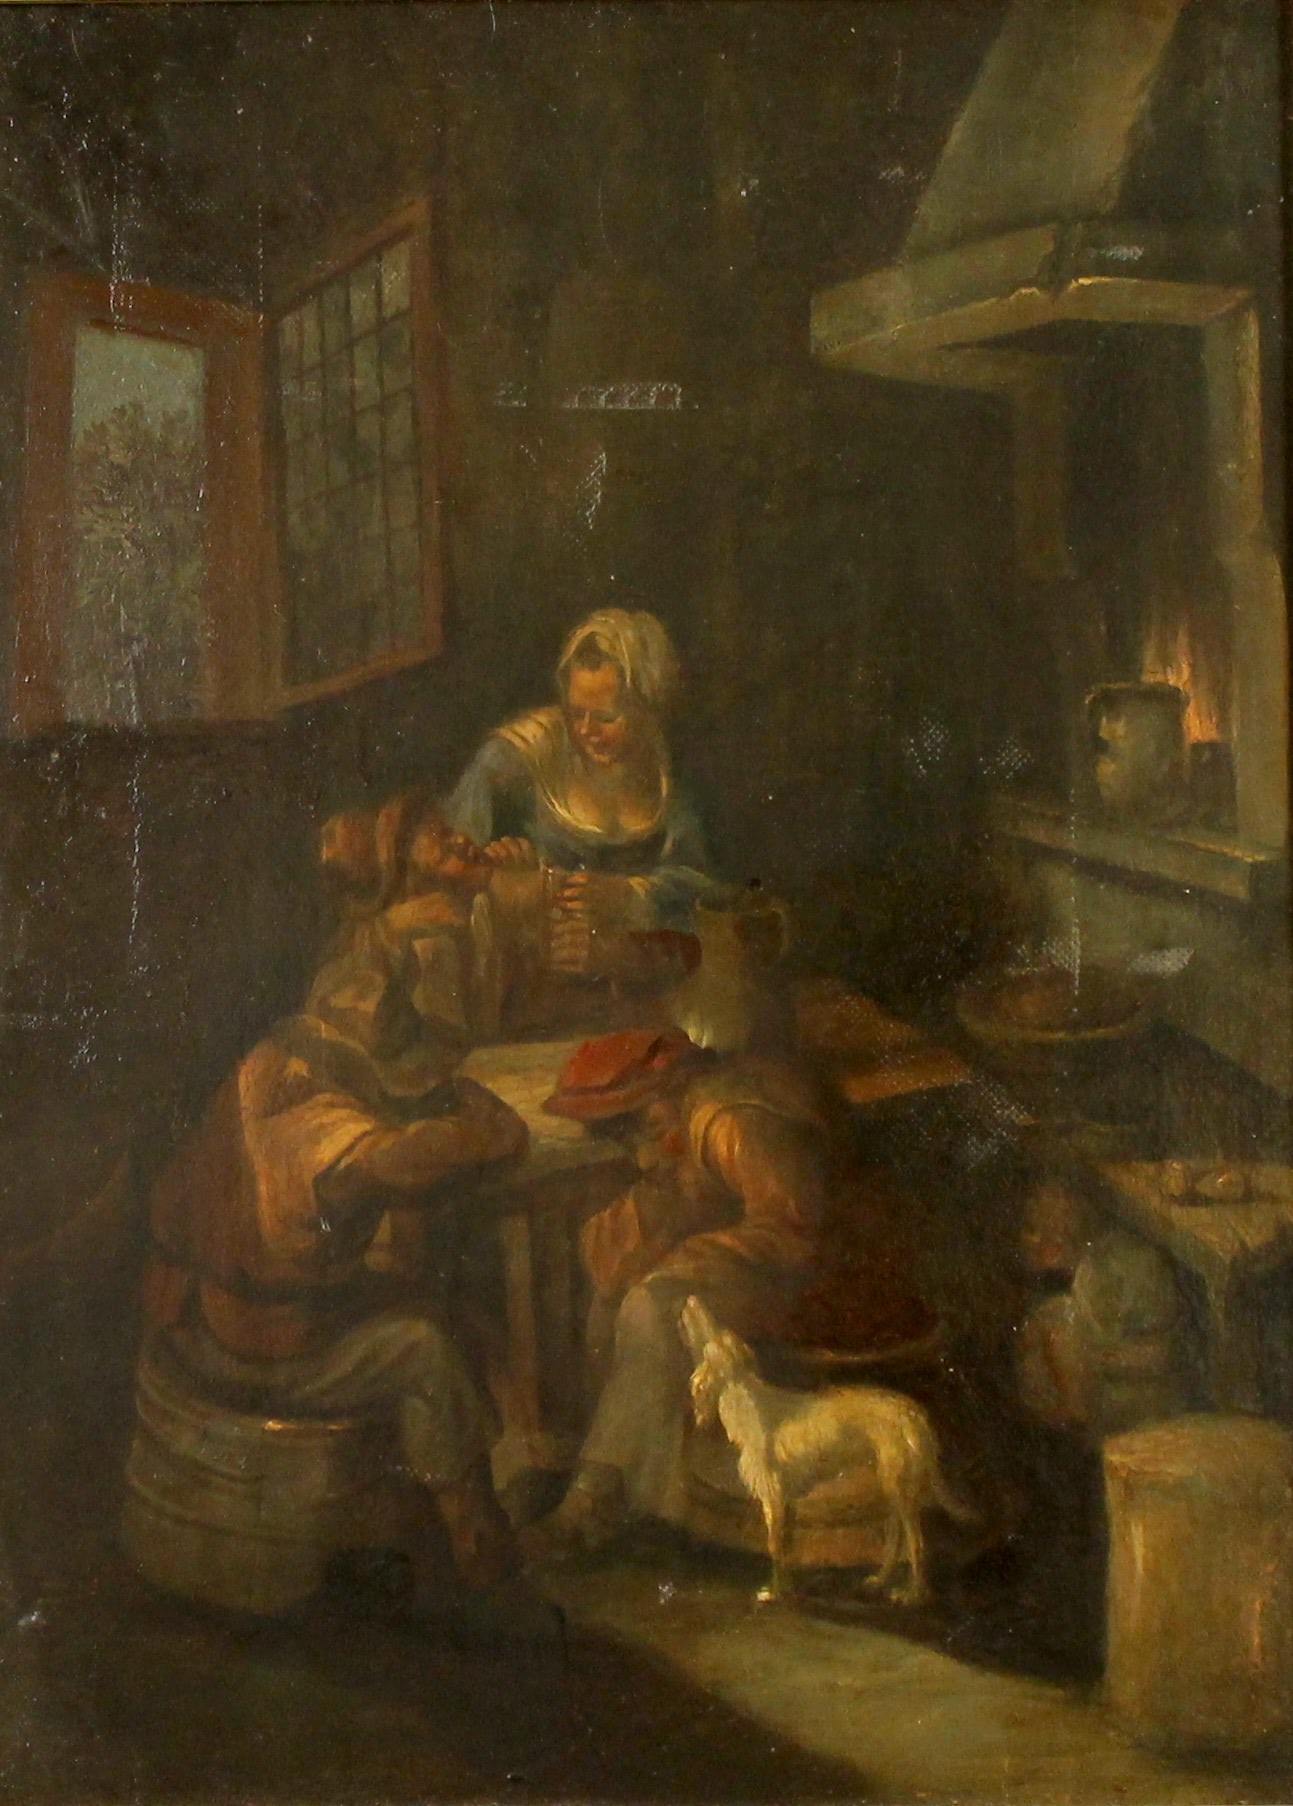 Scuola fiamminga del secolo XIX "Scena di interno con figure" - 19th century Flemish school "Interior scene with figures"